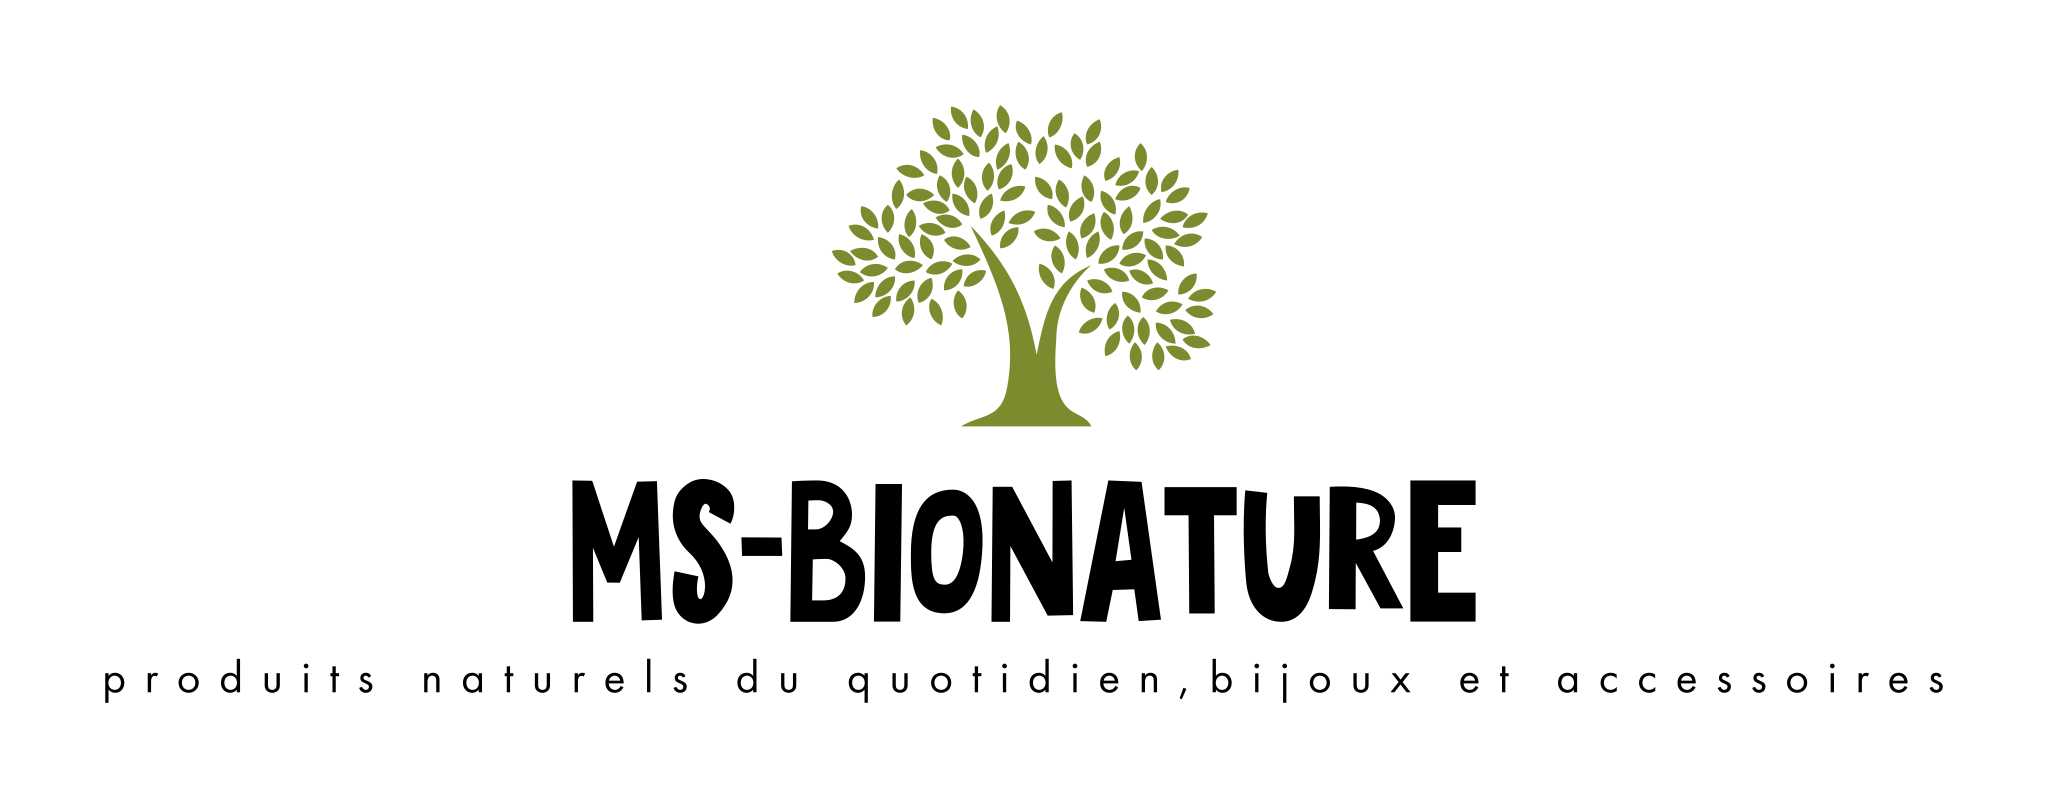 Page ms-bionature produits naturels du quotidien,bijoux et accessoires